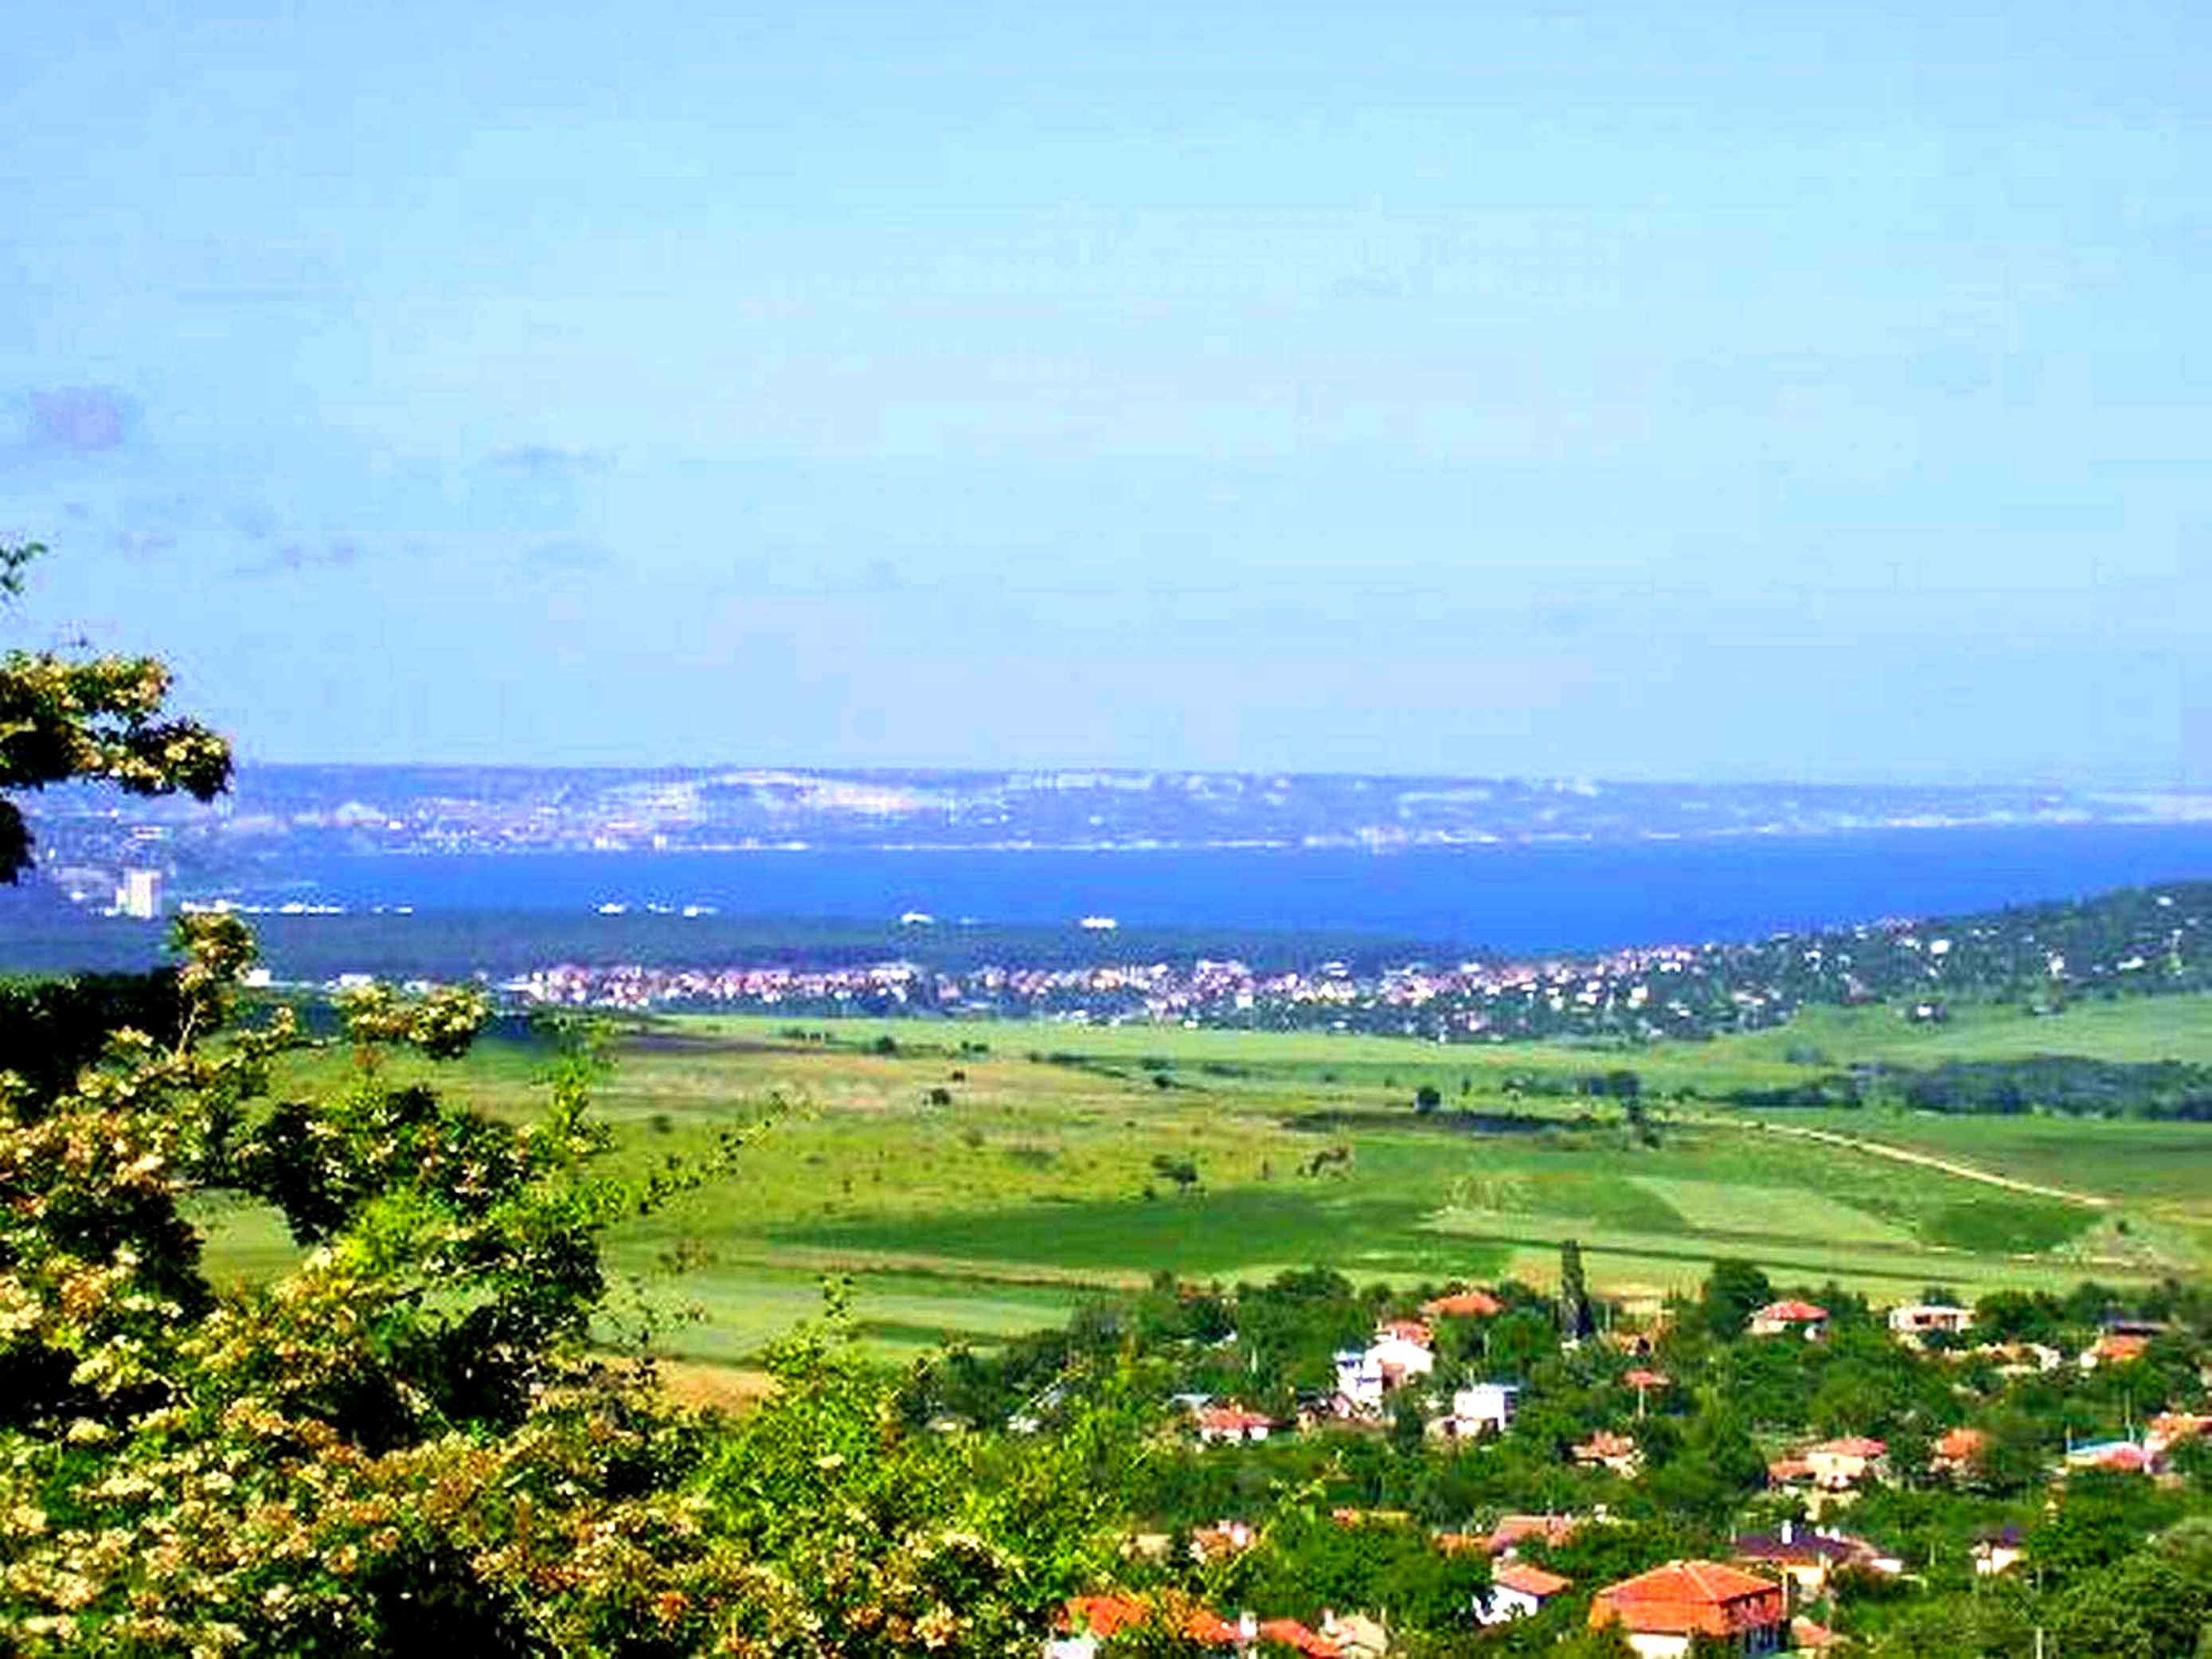 Osenovo. Osenovo, Bulgaria. The view from the Osenovo plot. 